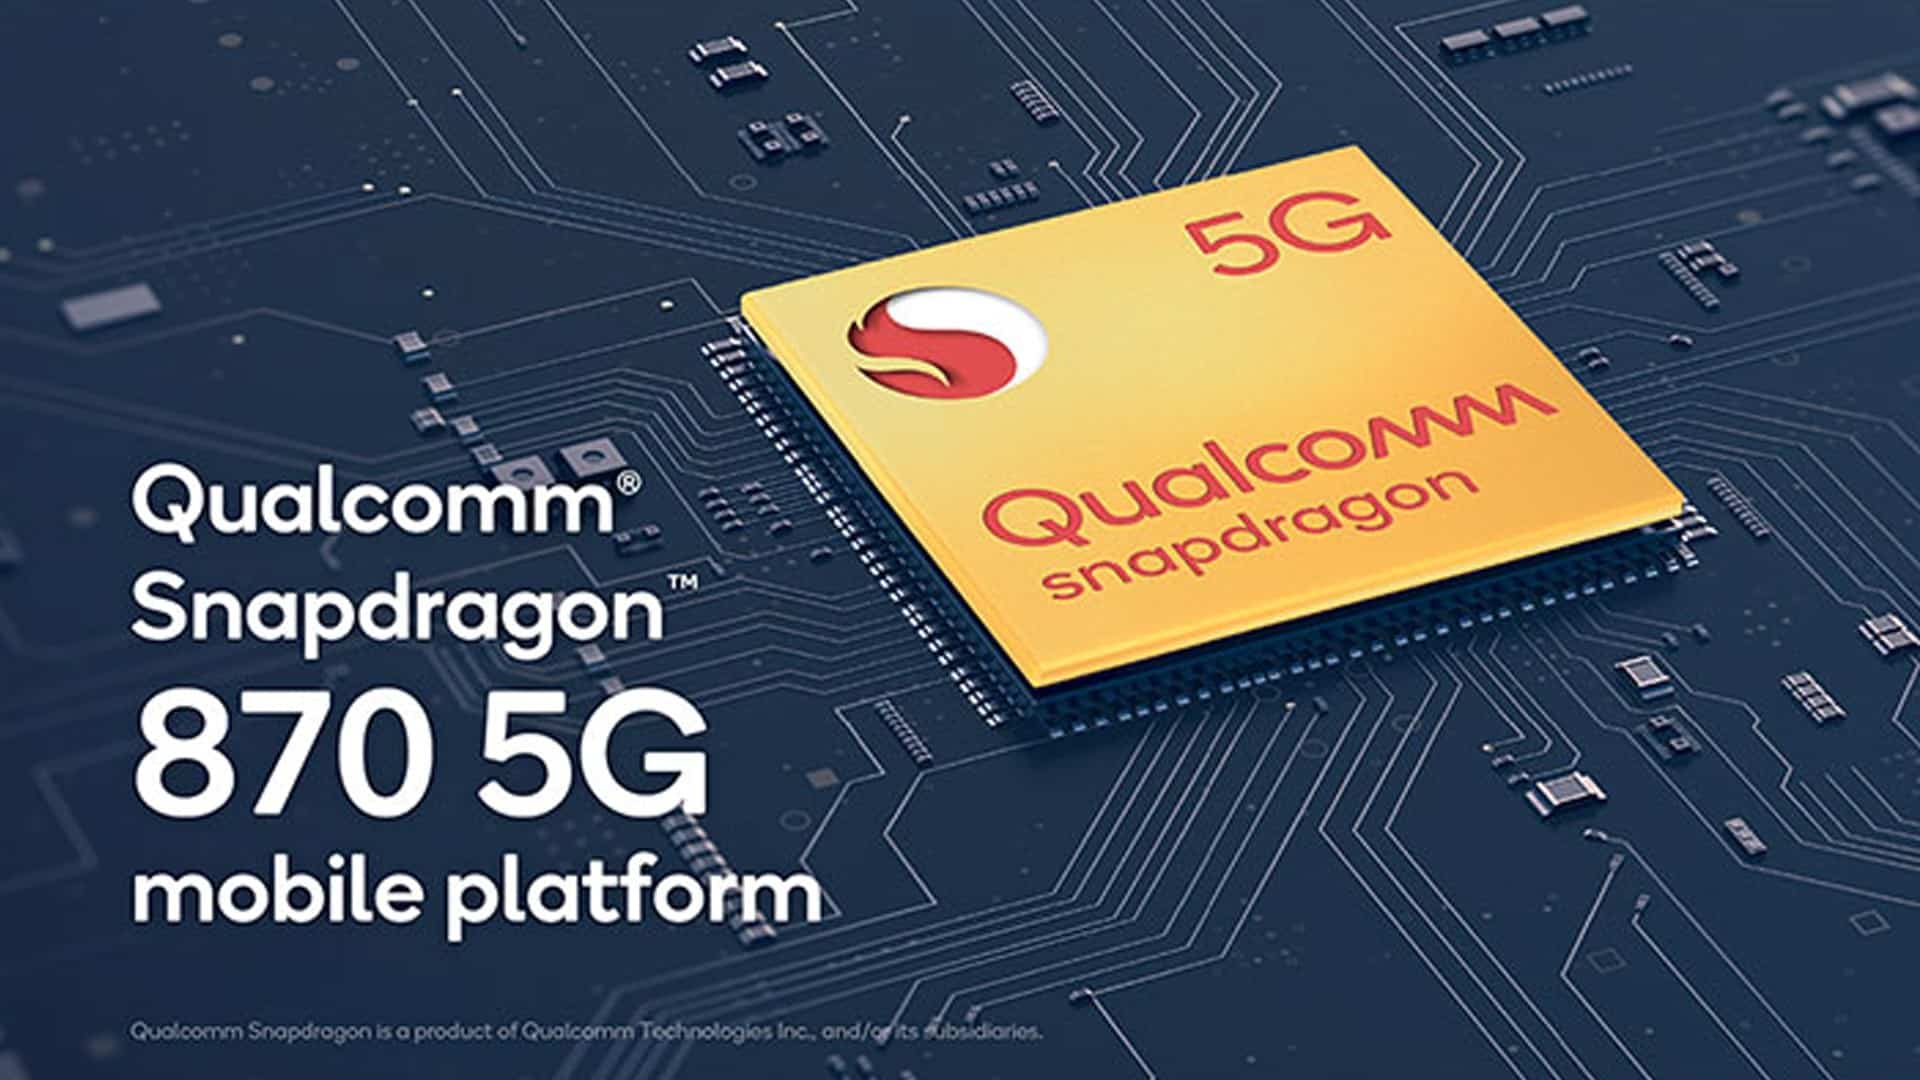 Qualcomm Announces Snapdragon 870 5G Mobile Platform